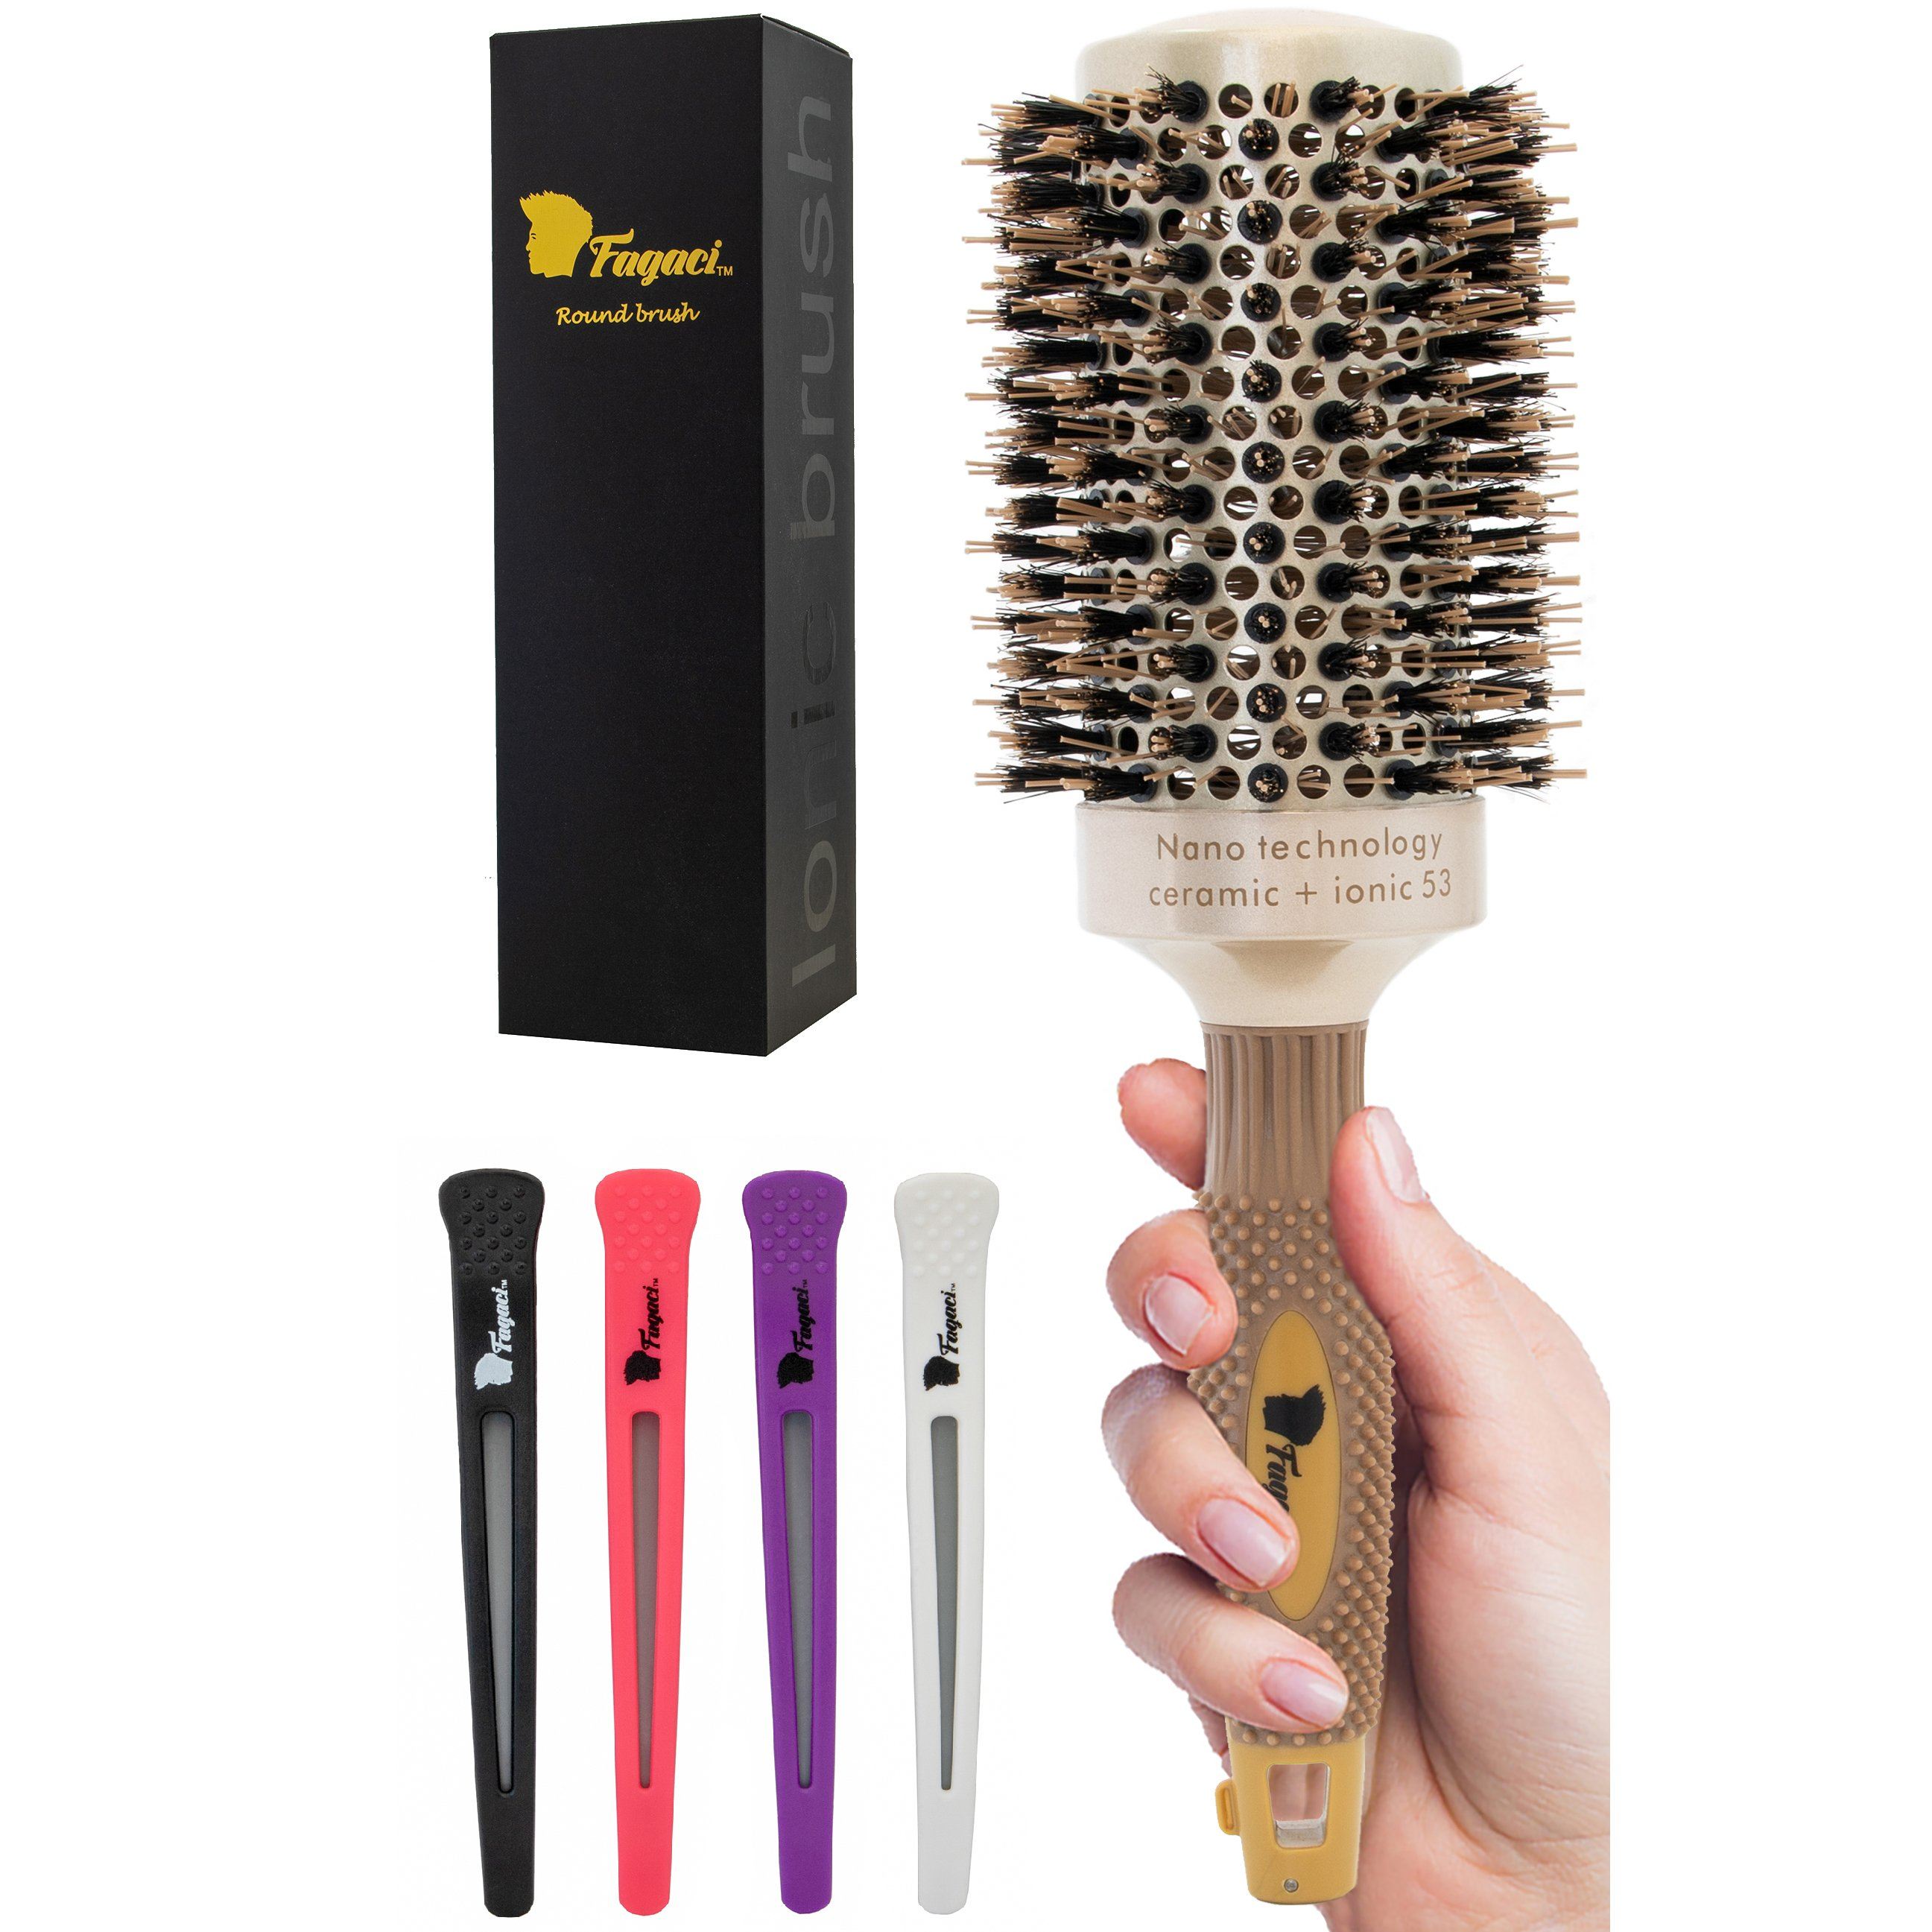 Nano Technology Ceramic Ionic брашинг. Max Pro Ceramic Round hair Dryer Brush. Brush for coarse hair. Round brush